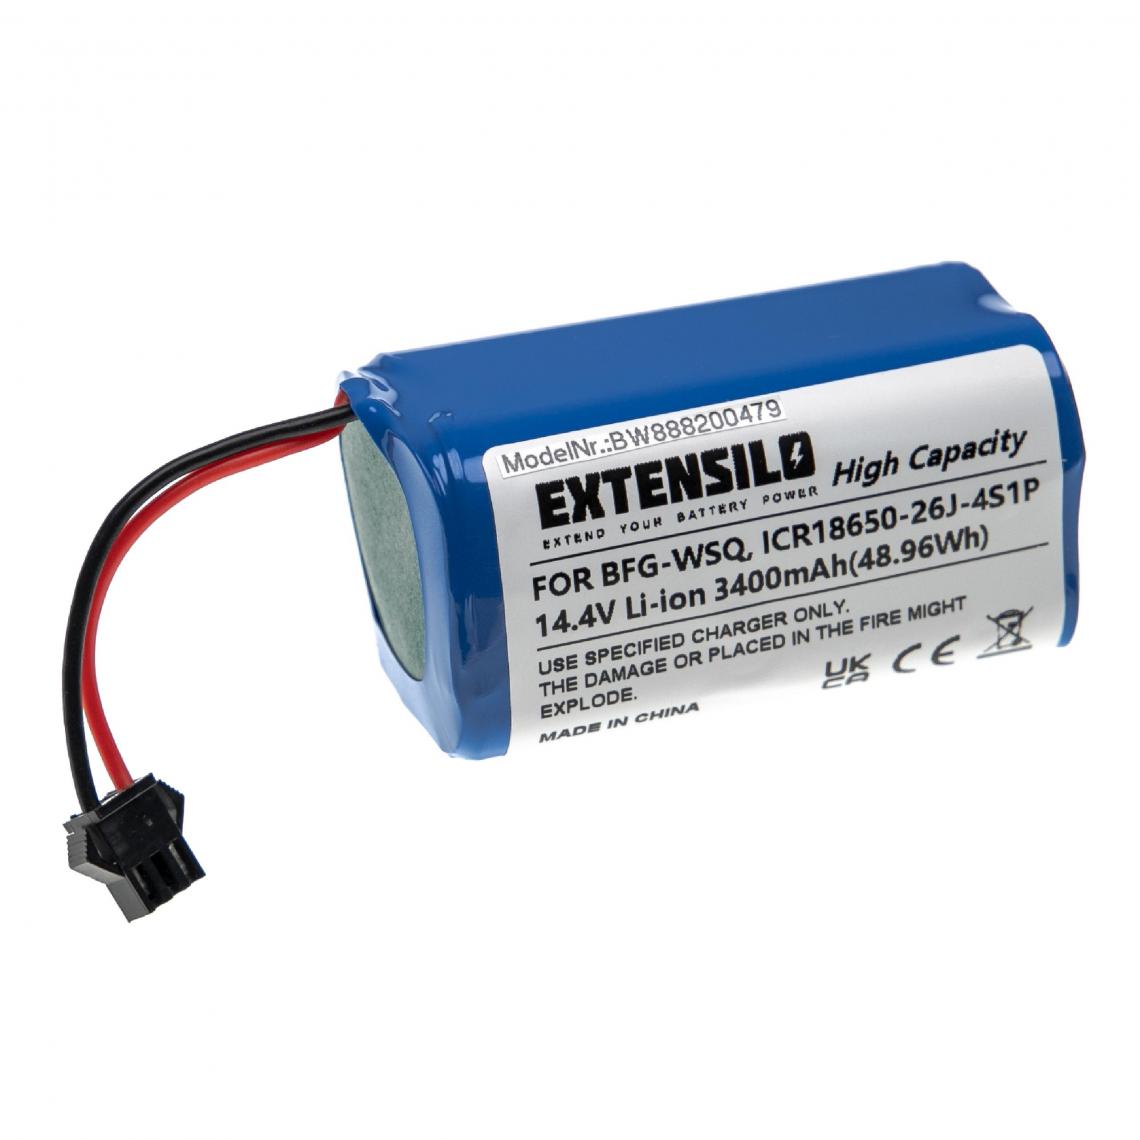 Vhbw - EXTENSILO Batterie compatible avec Ecovacs 30C Max, 35C aspirateur, robot électroménager (3 400mAh, 14,4V, Li-ion) - Accessoire entretien des sols